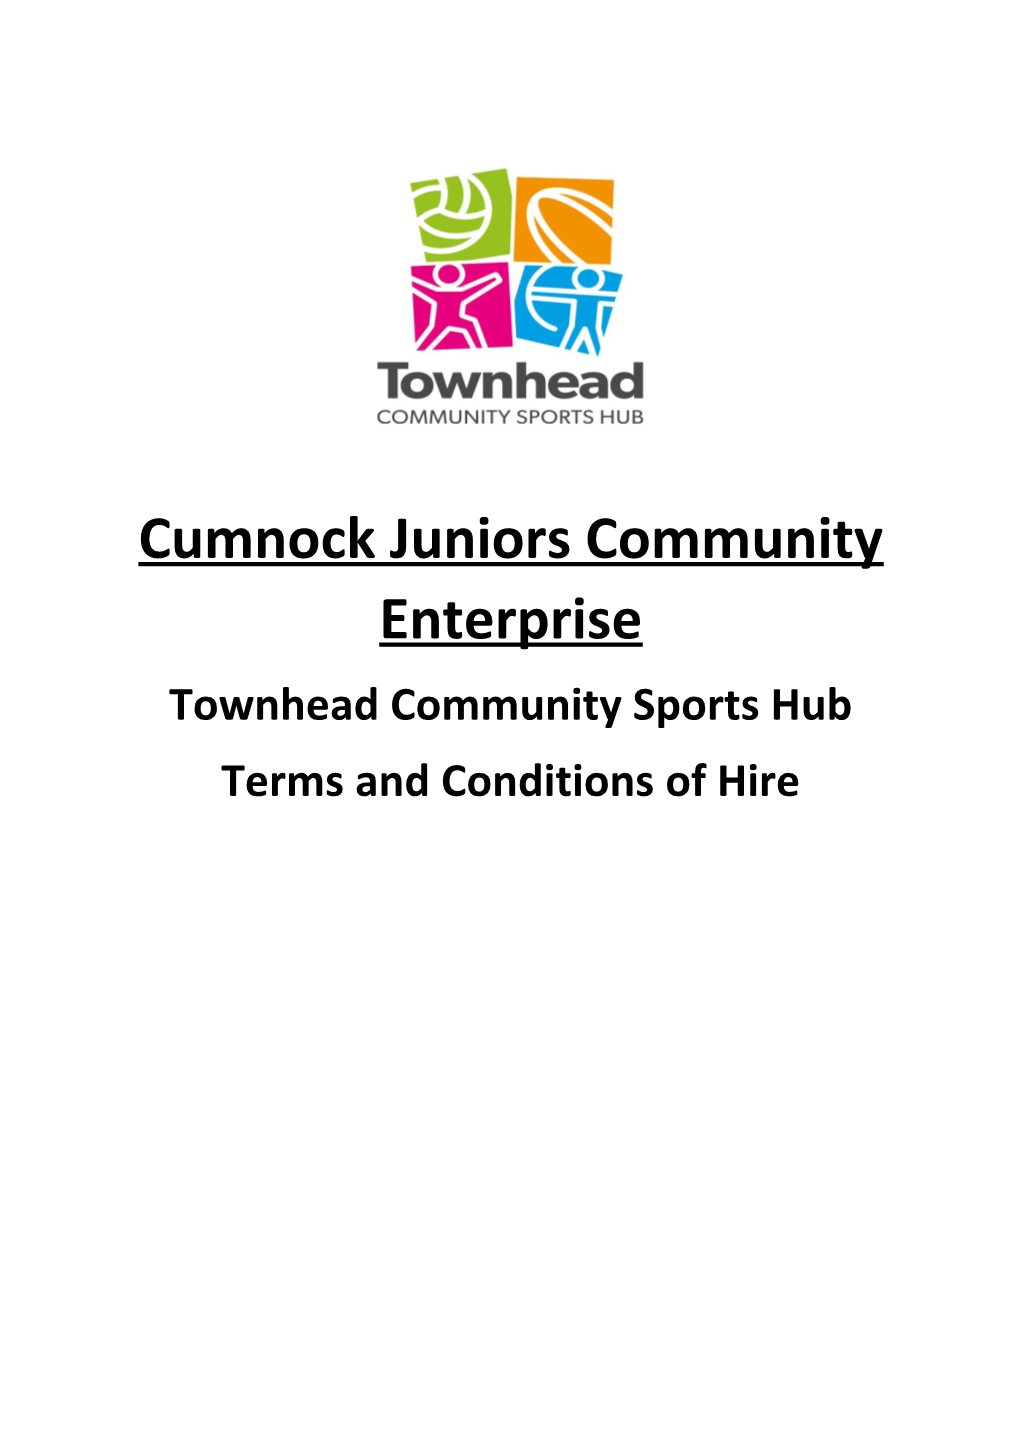 Cumnock Juniors Community Enterprise